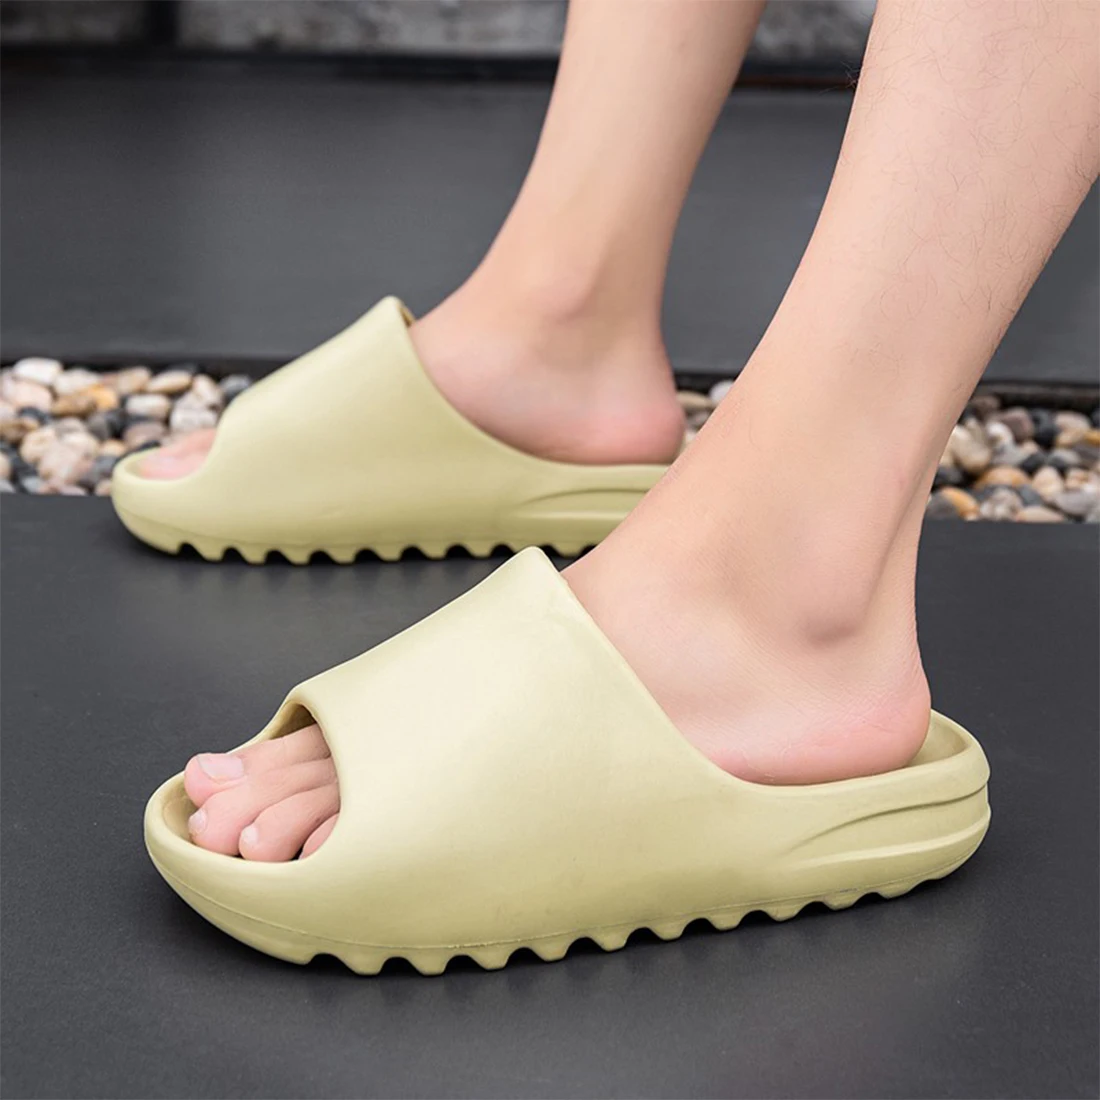 Summer Slippers Men Women Indoor Eva 2020 Cool Soft Bottom Sandals Trend Unisex Slides Light Beach Shoes Slippers Home 35-46